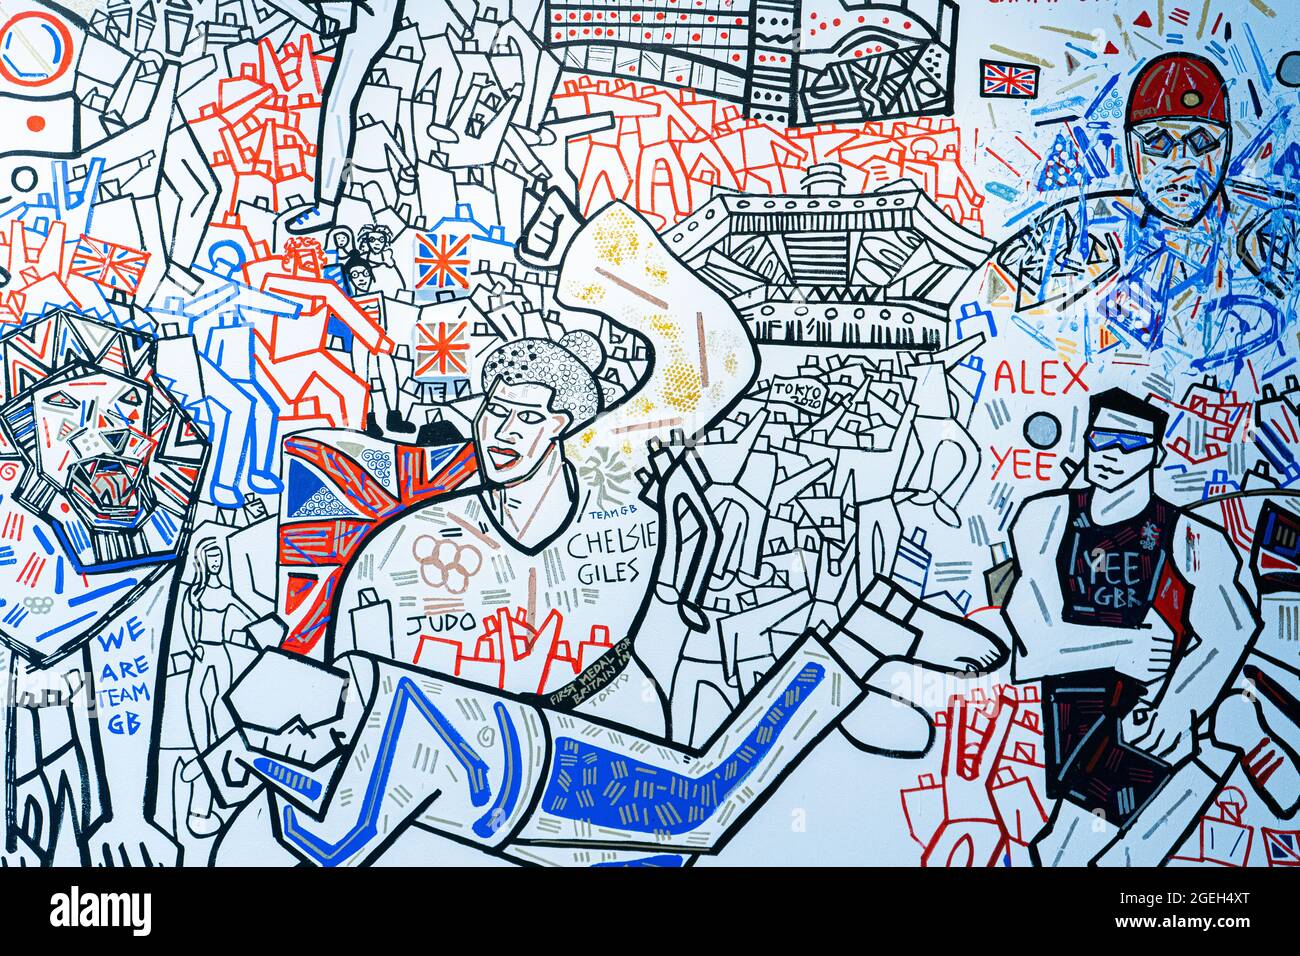 LONDRA, REGNO UNITO. 20 agosto 2021. Il murale del muro completato che ha inserito il successo degli atleti del Team Great Britain (GB) alle Olimpiadi di Tokyo del 2020. Il murale è stato creato ben Mosley, un pittore espressionista e d'azione presso il pop-up Team GB Studio di Carnaby Street, che è stato aggiornato ogni giorno durante i giochi olimpici con i successi medaglia degli atleti. Credit: amer Ghazzal/Alamy Live News Foto Stock